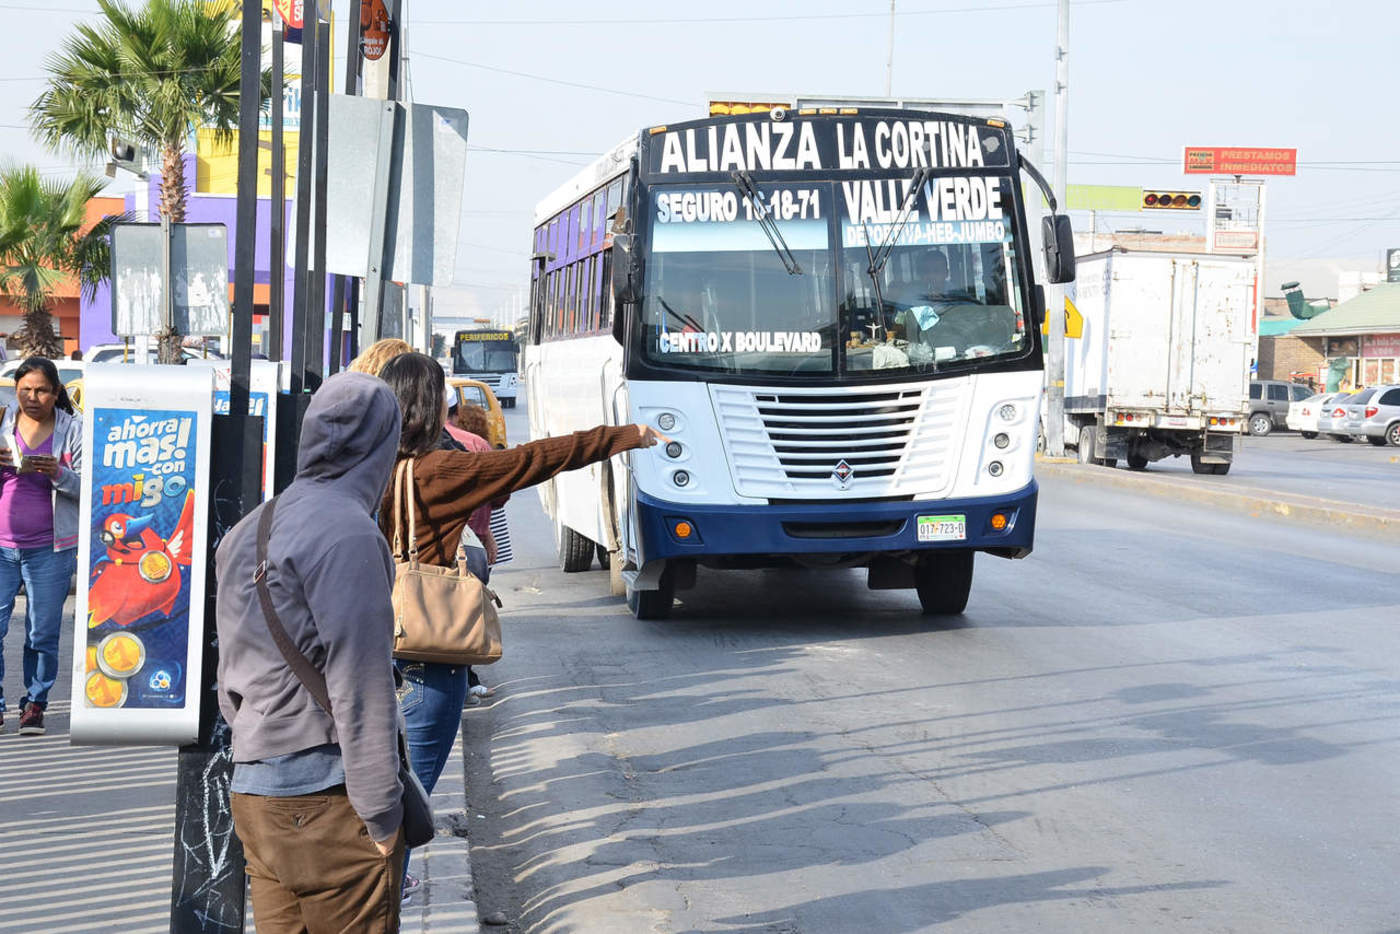 Asimismo se exhortó al Ayuntamiento de Torreón para que en caso de que se apruebe algún aumento en el transporte público, queden intactas las tarifas preferenciales que hasta ahora han tenido los estudiantes, las personas adultas mayores y con discapacidad. (ARCHIVO)